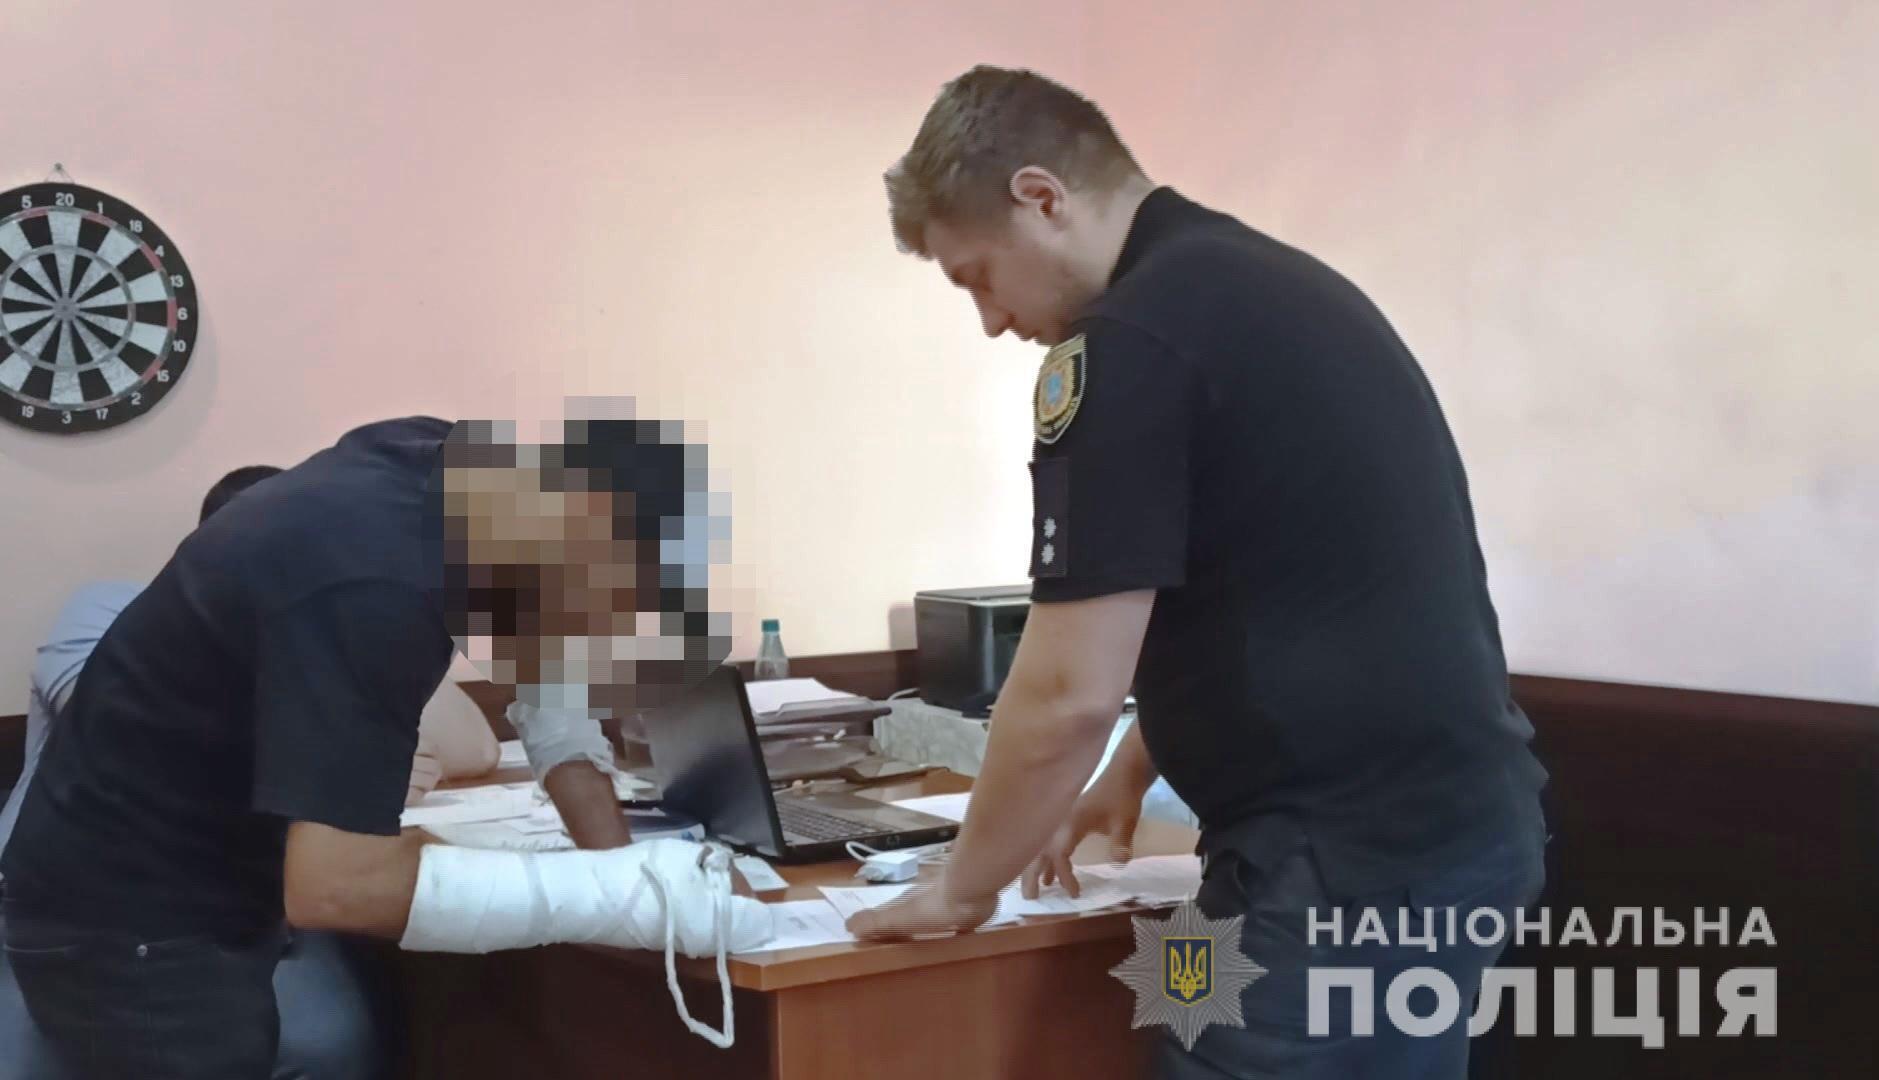 В Одесі поліцейські затримали вихідця із Закавказзя за підозрою у спричиненні ножового поранення місцевому жителю